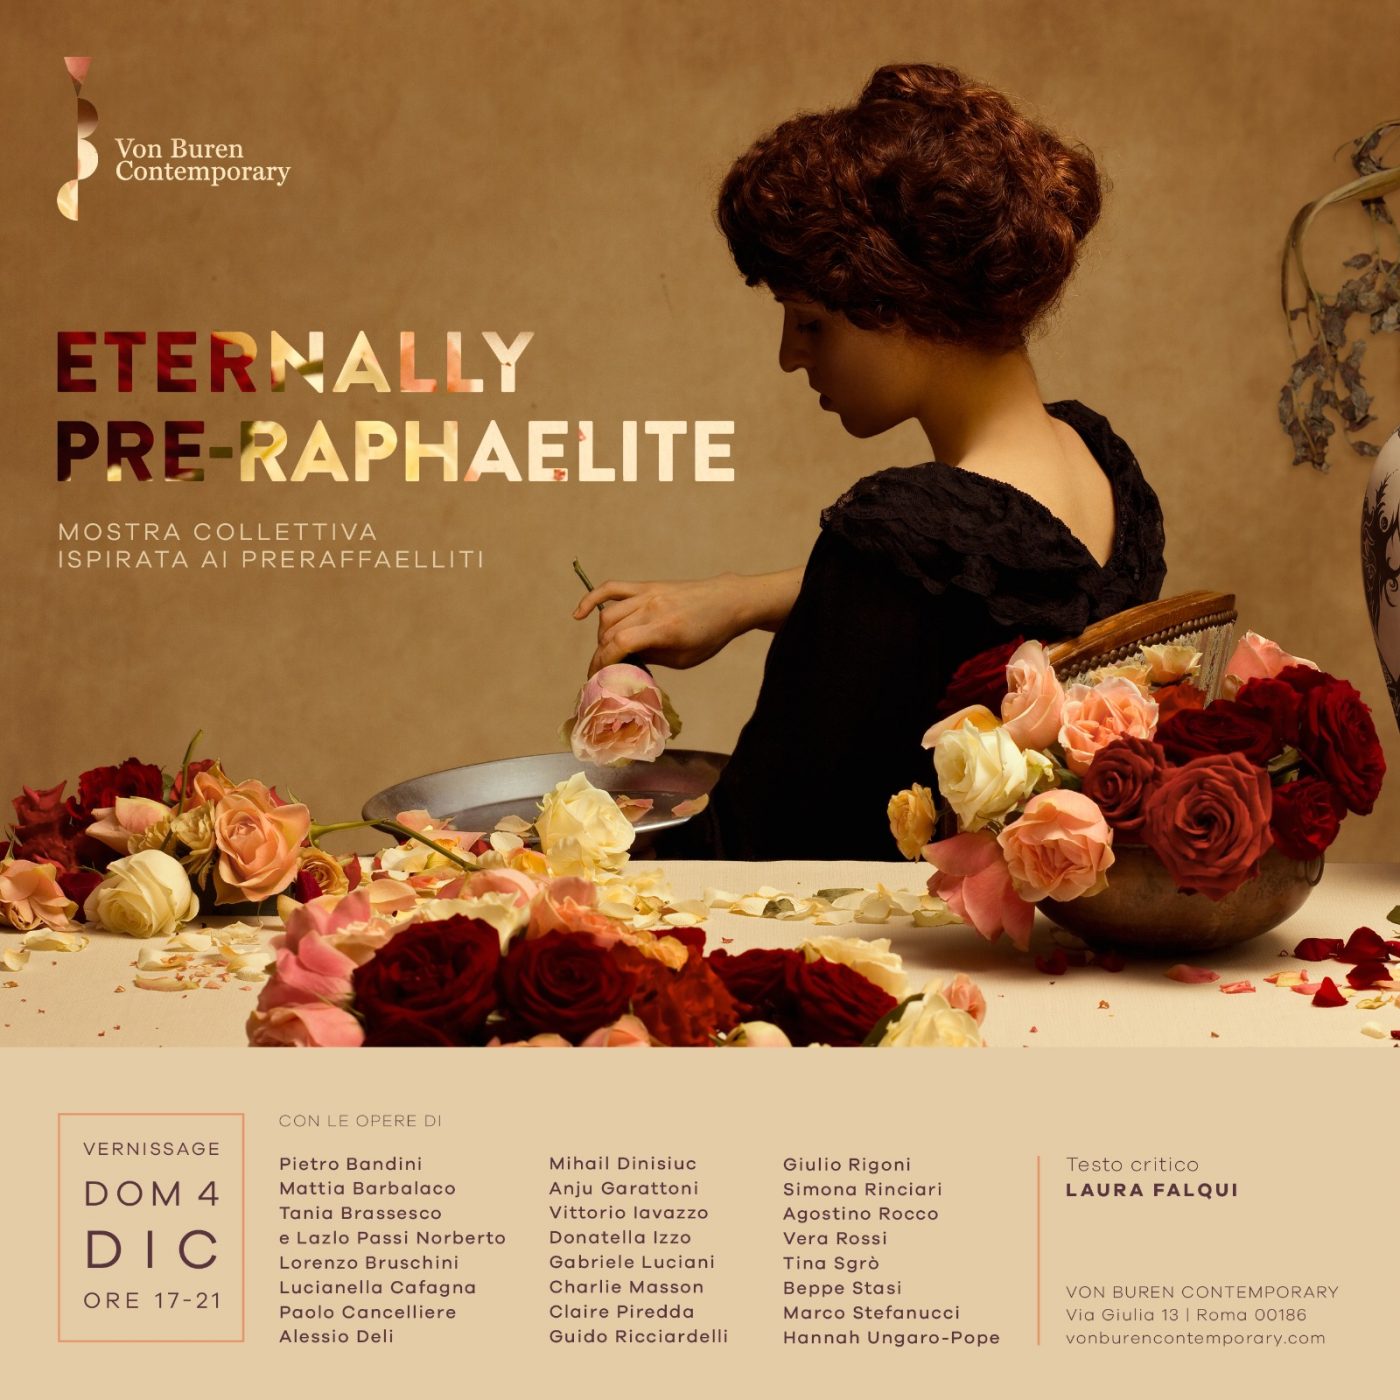 La Von Buren Contemporary inaugura la collettiva Eternally Pre-Raphaelite